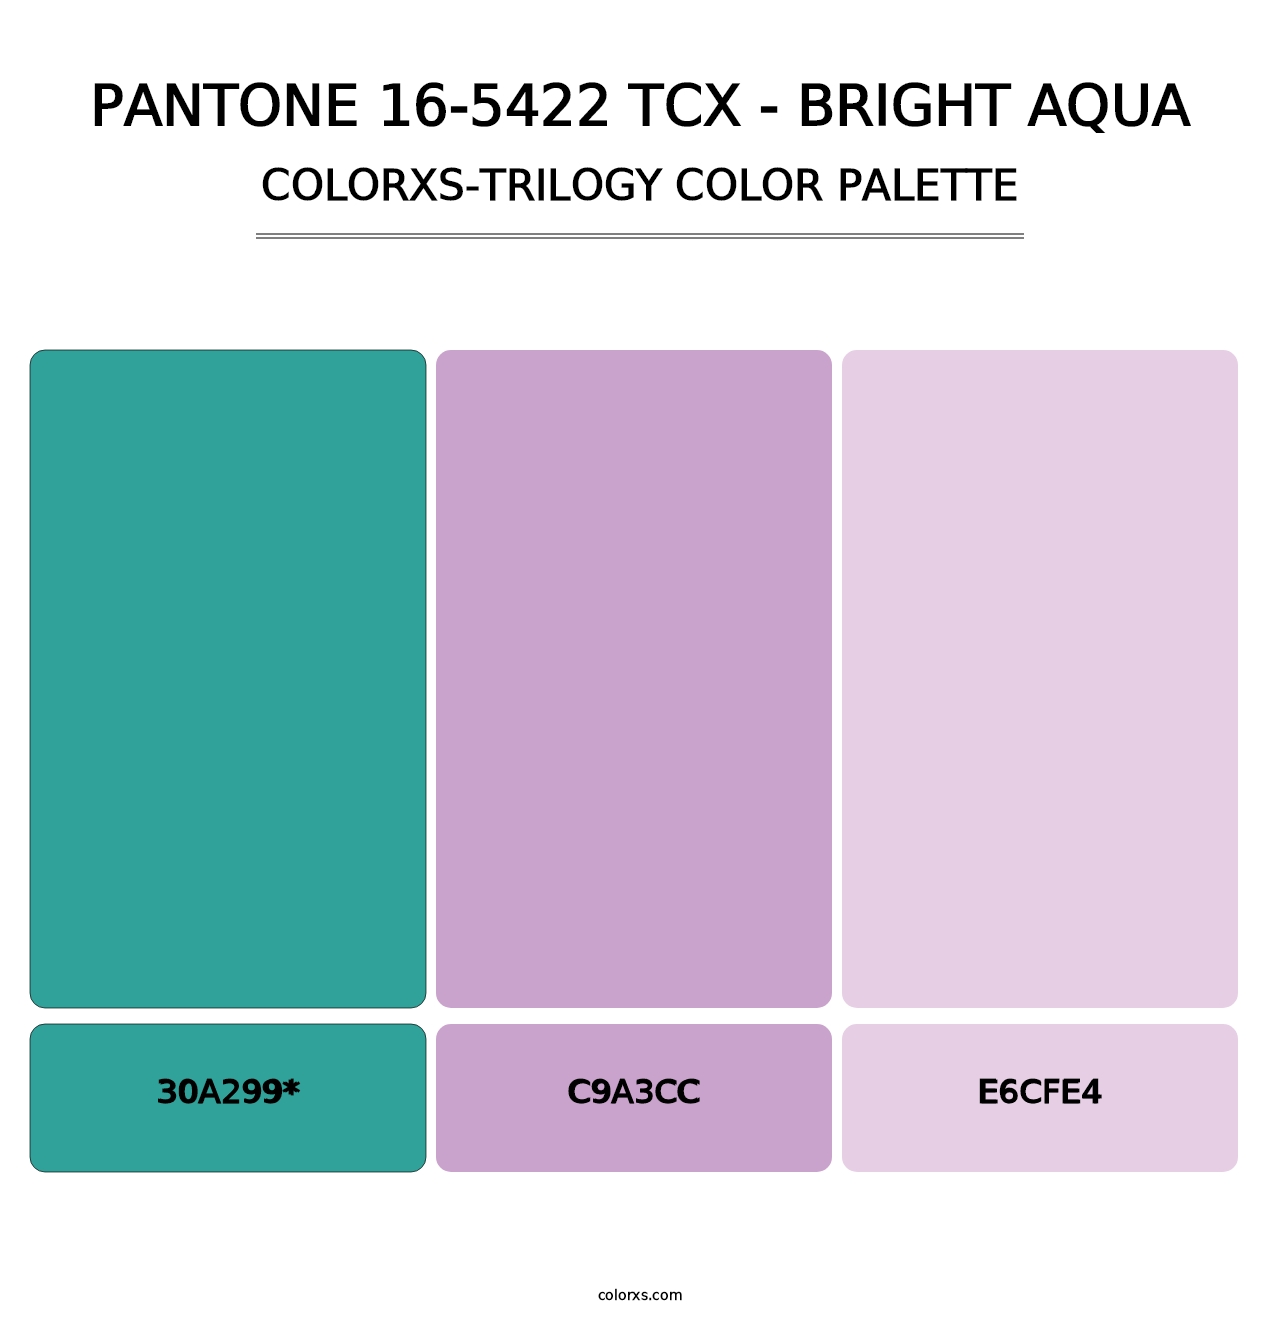 PANTONE 16-5422 TCX - Bright Aqua - Colorxs Trilogy Palette